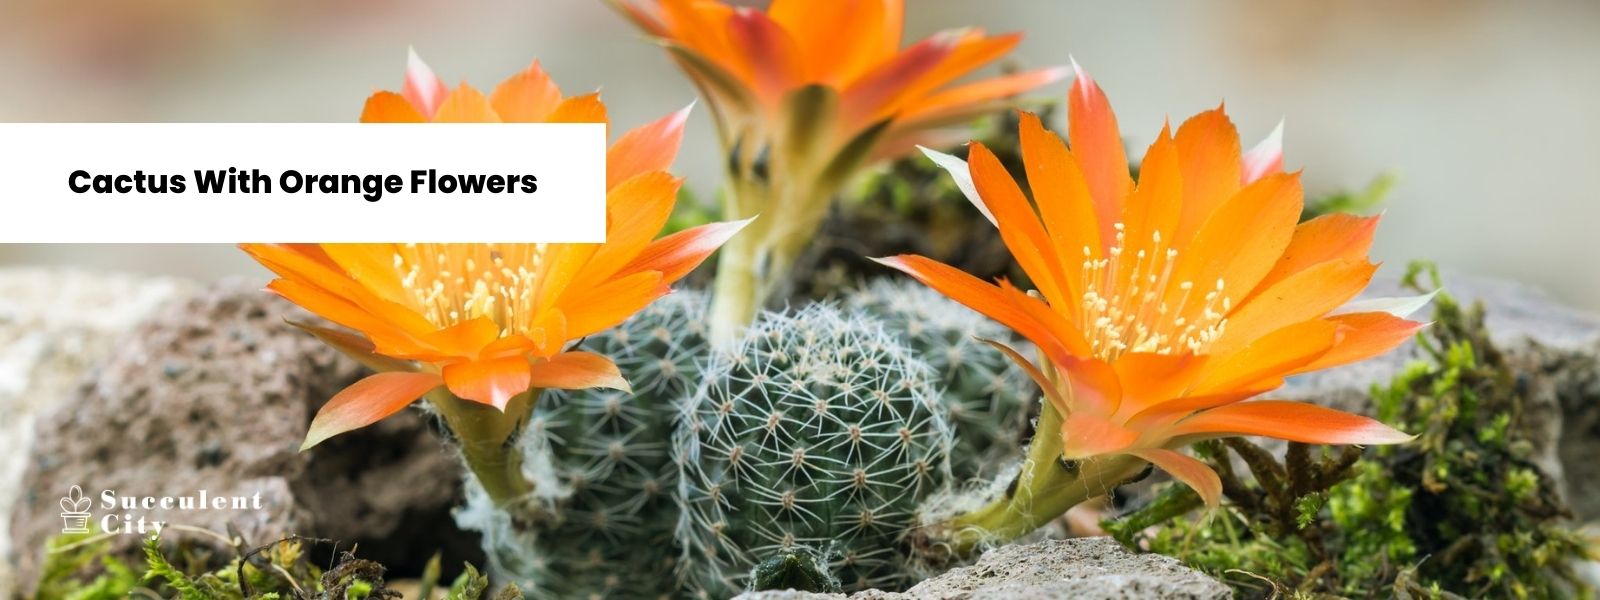 Una deliciosa lista de cactus con flores de naranja.